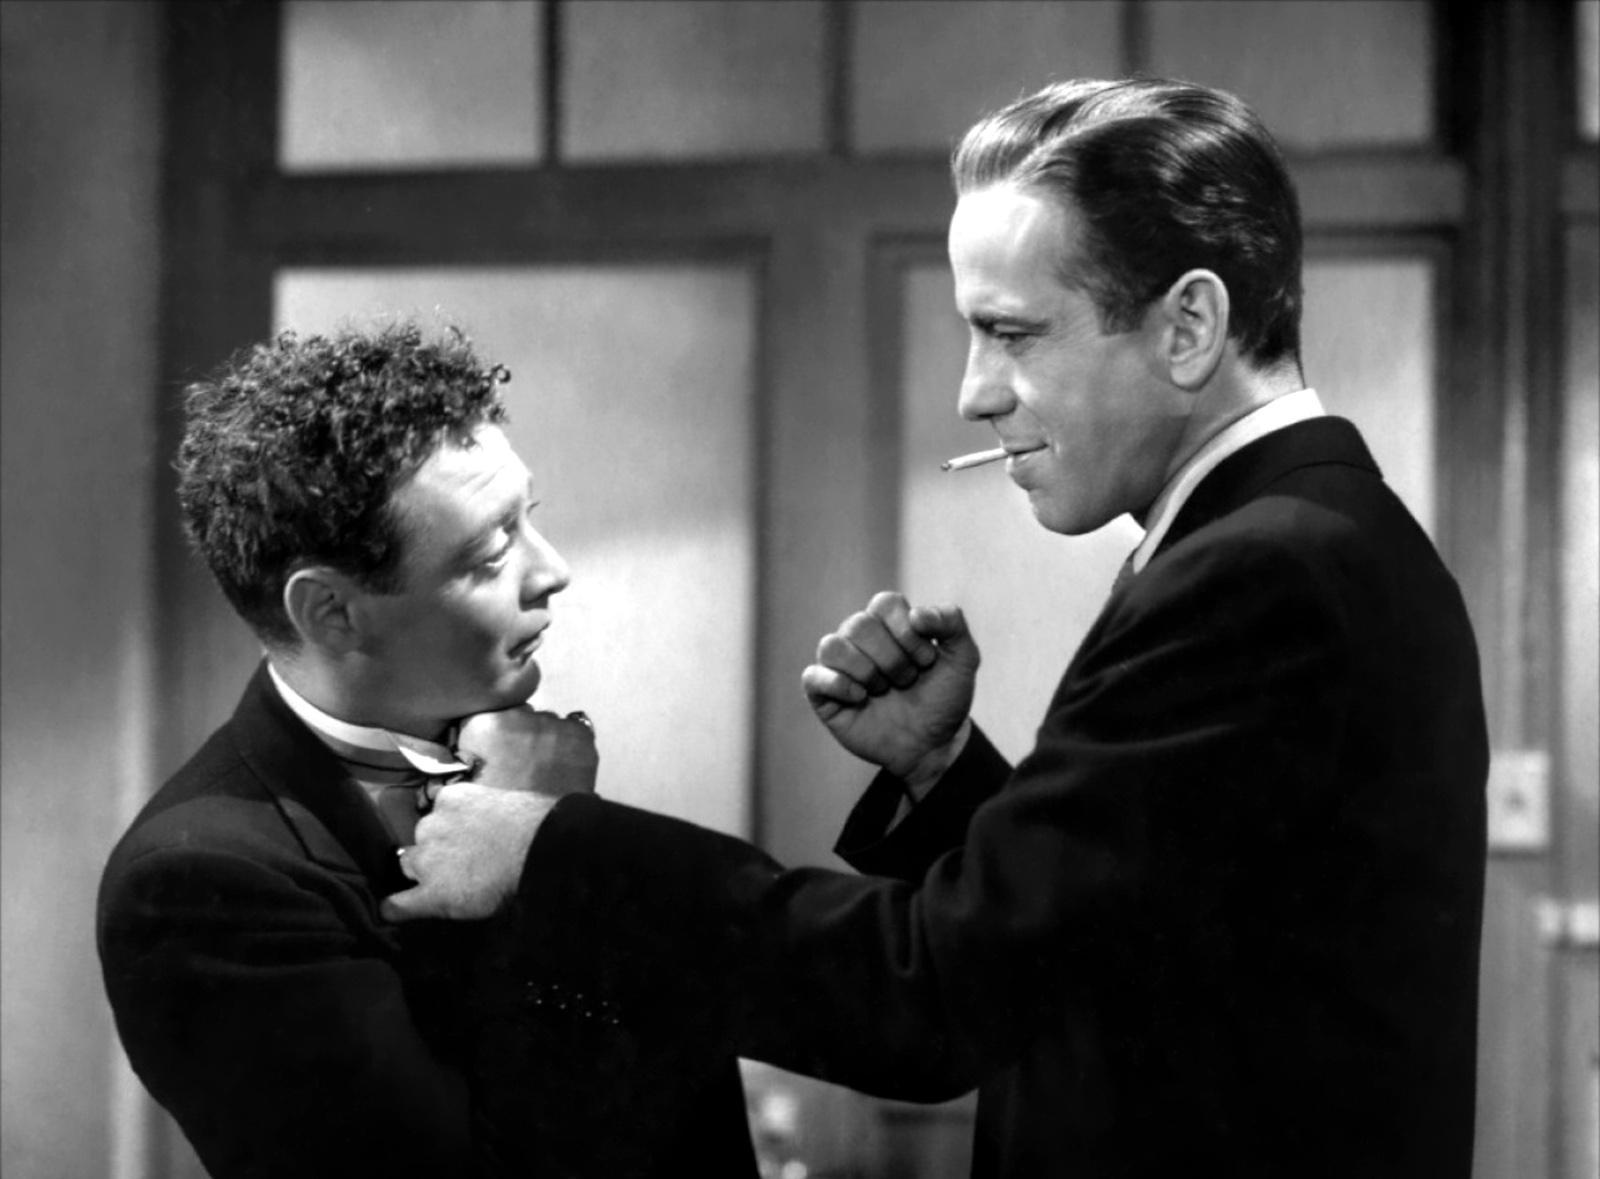 El halcón maltés (1941), dirigida por John Huston. Cine negro clásico